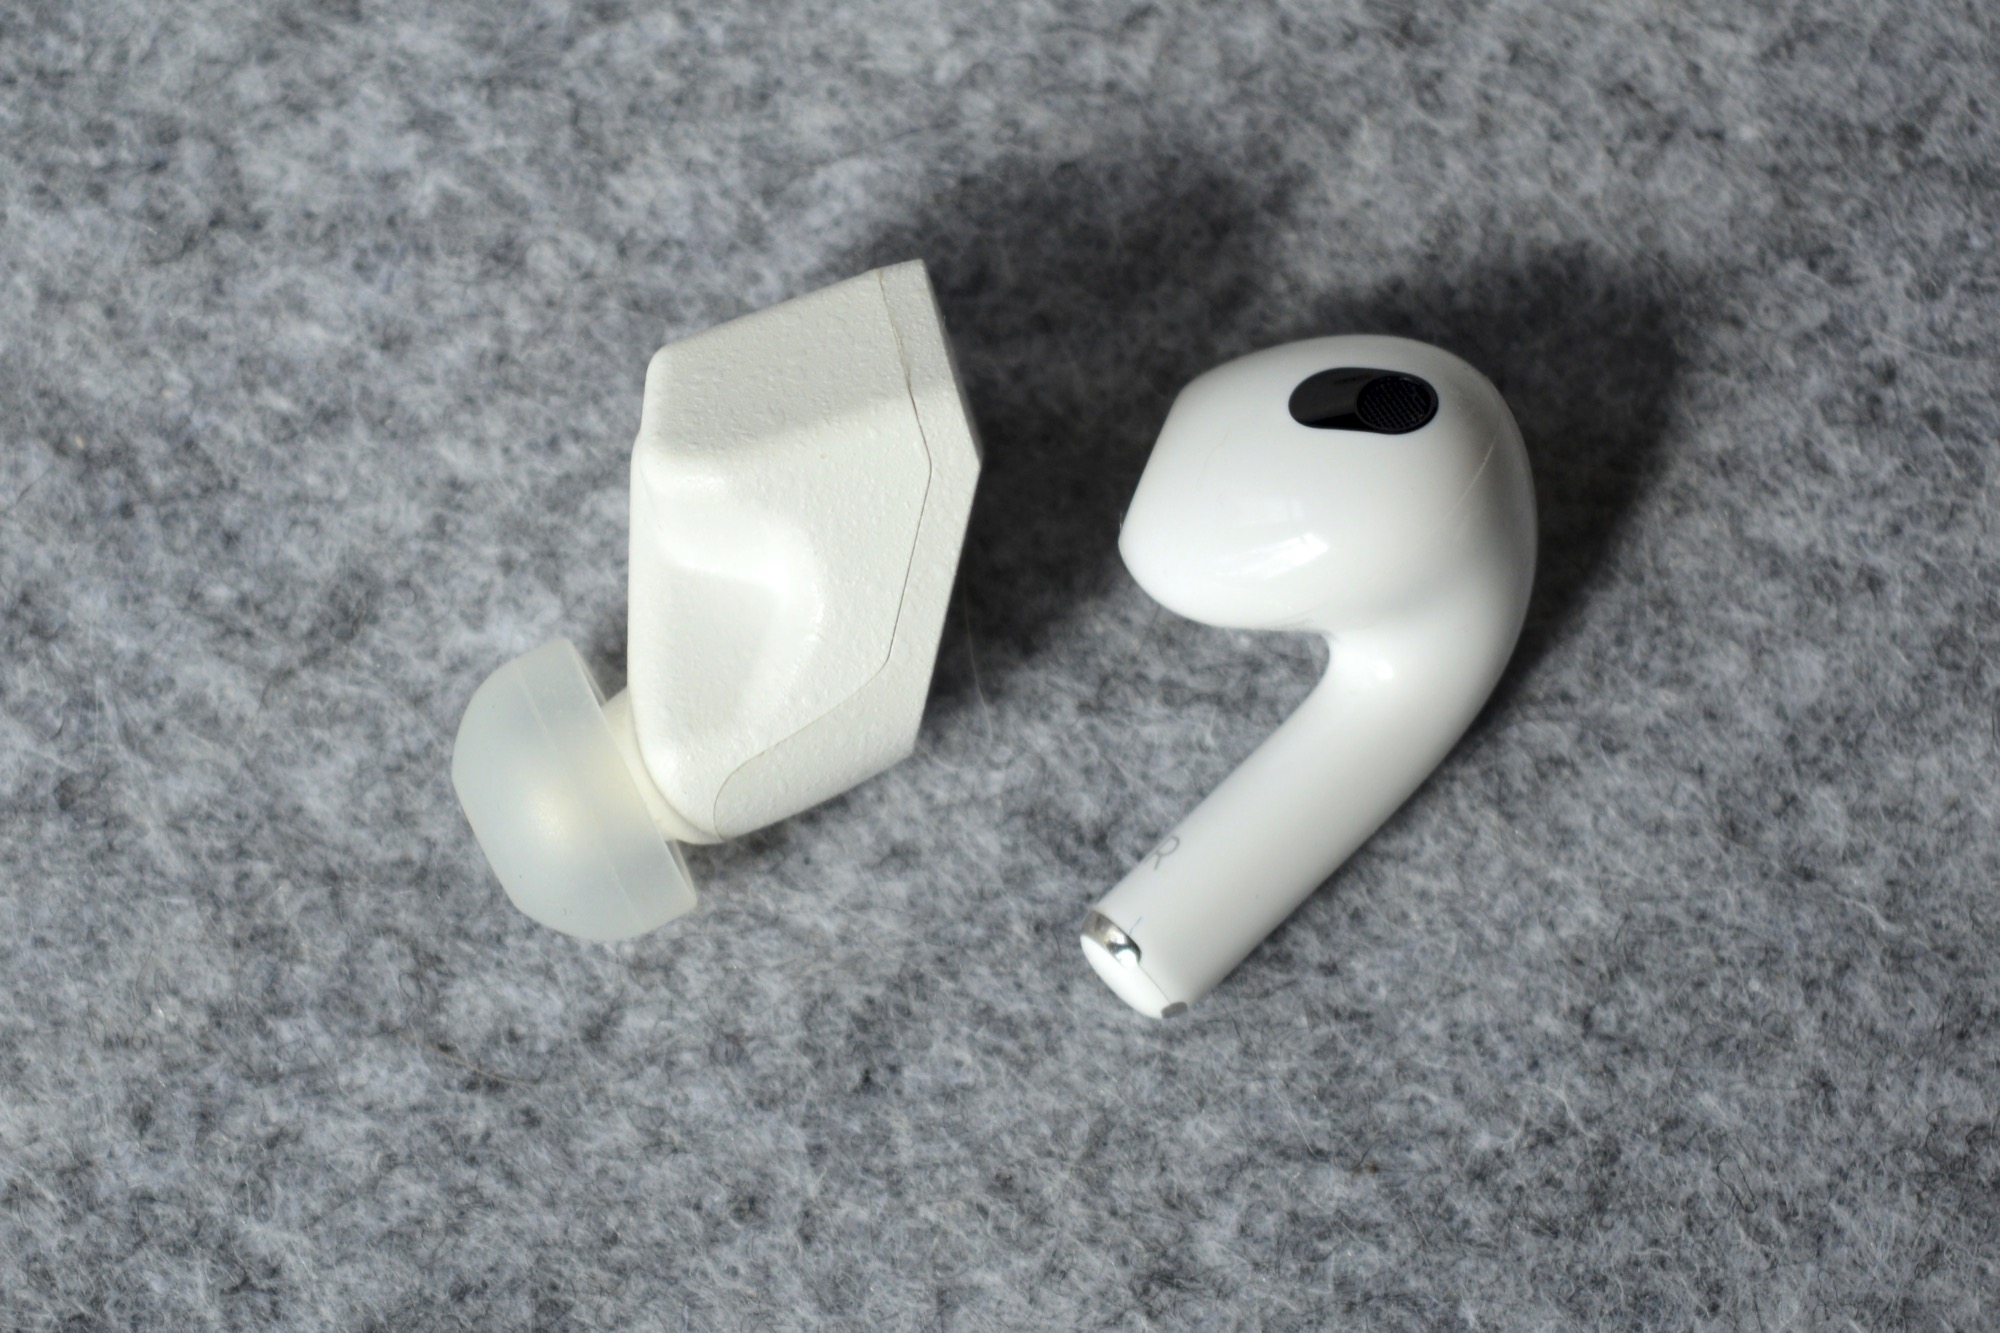 Final Audio ZE3000 wireless earbuds seen next to the third-gen Apple AirPods.